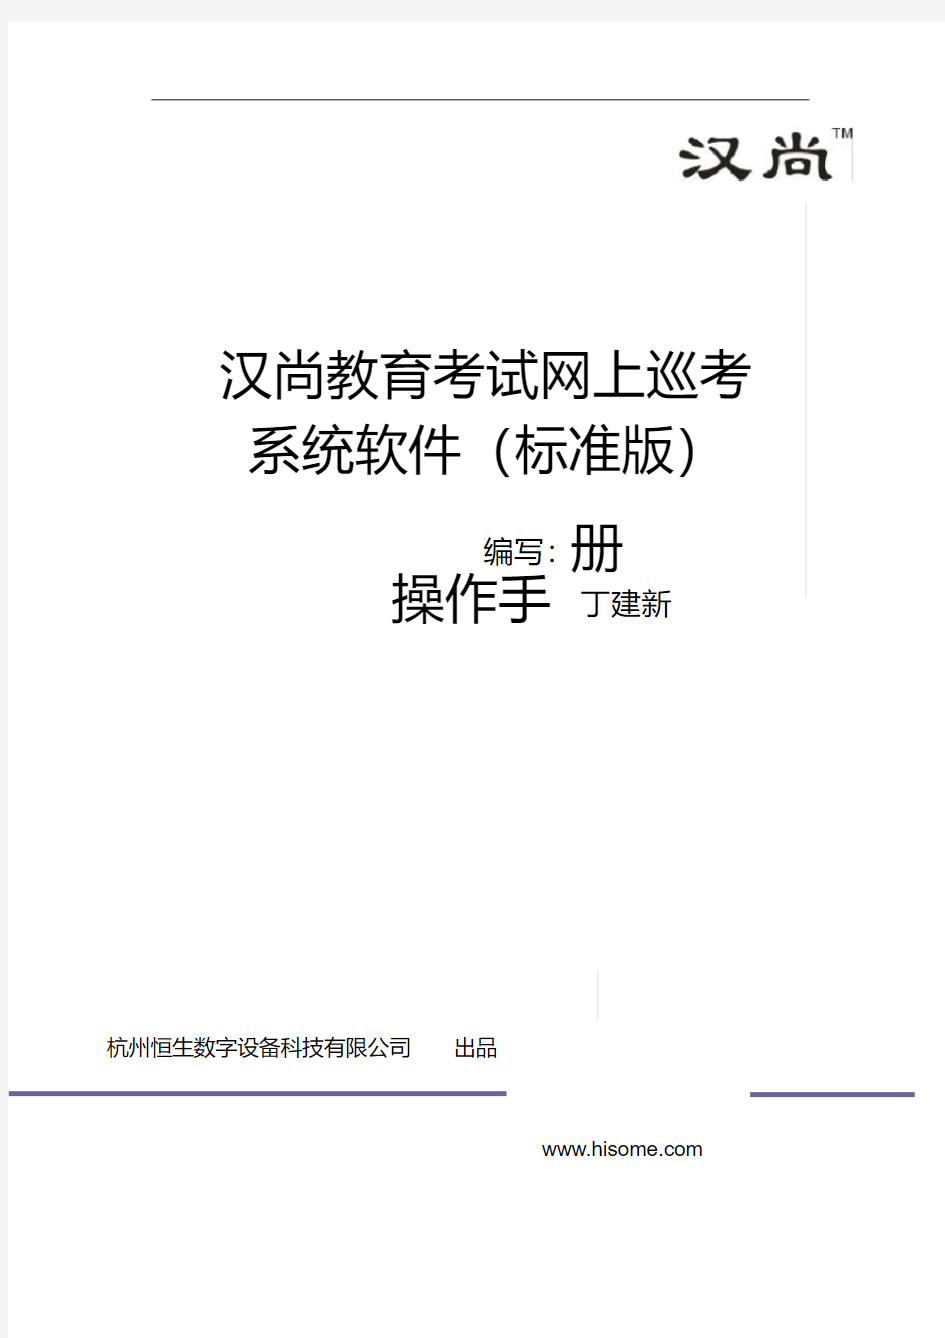 汉尚教育考试网上巡查系统软件操作手册标准版